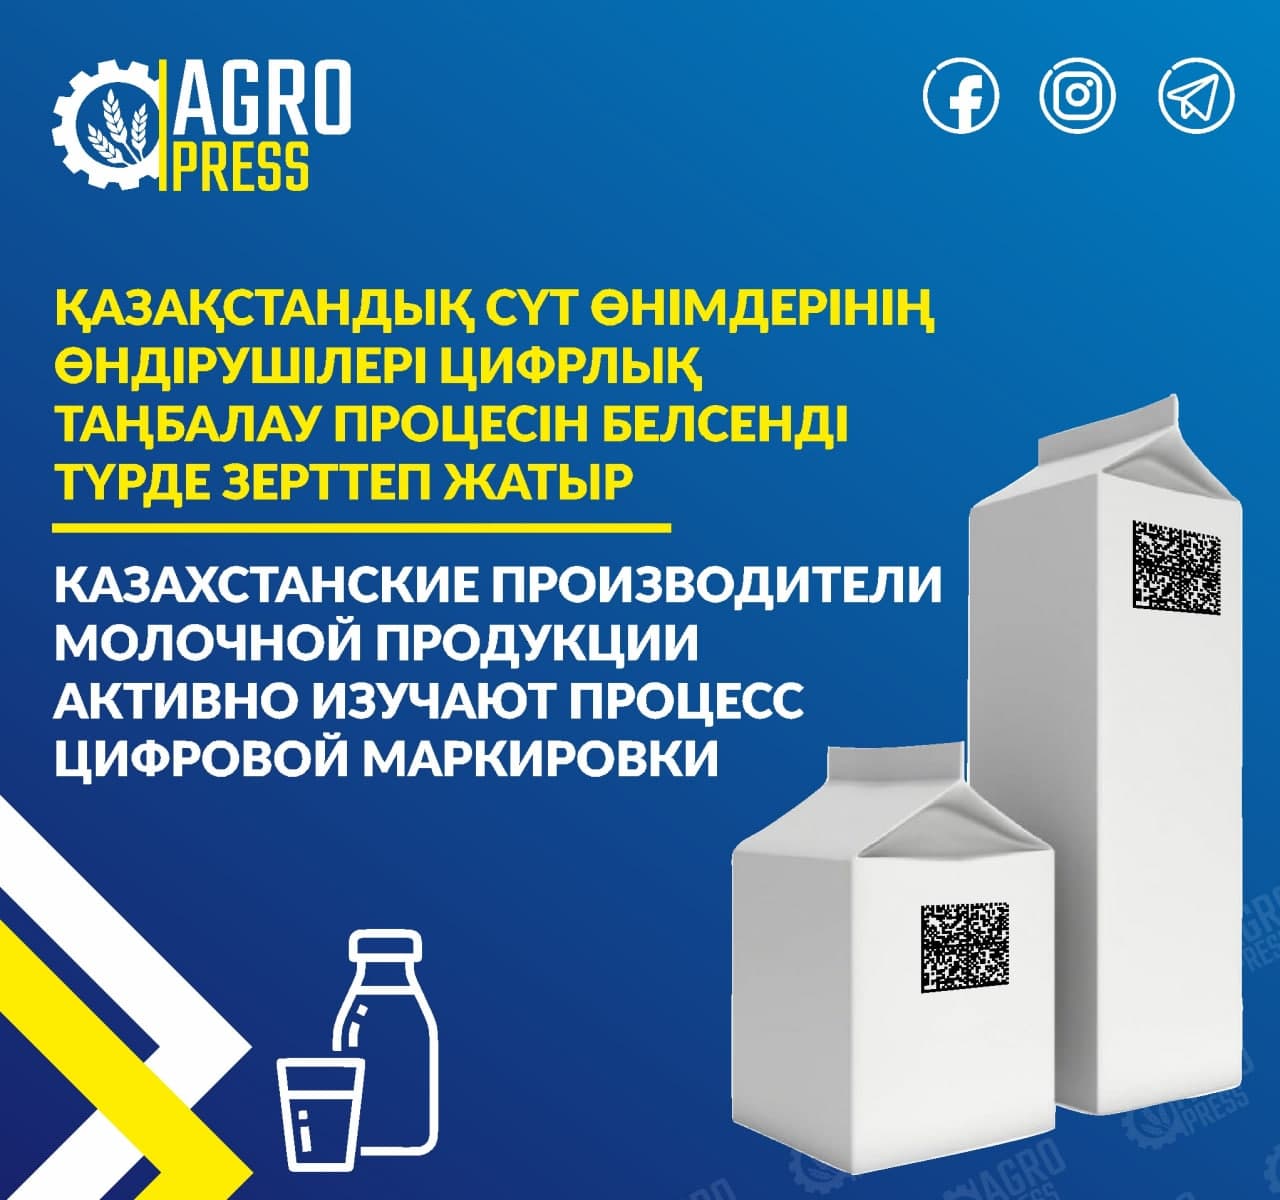 Казахстанские производители молочной продукции активно изучают процесс цифровой маркировки